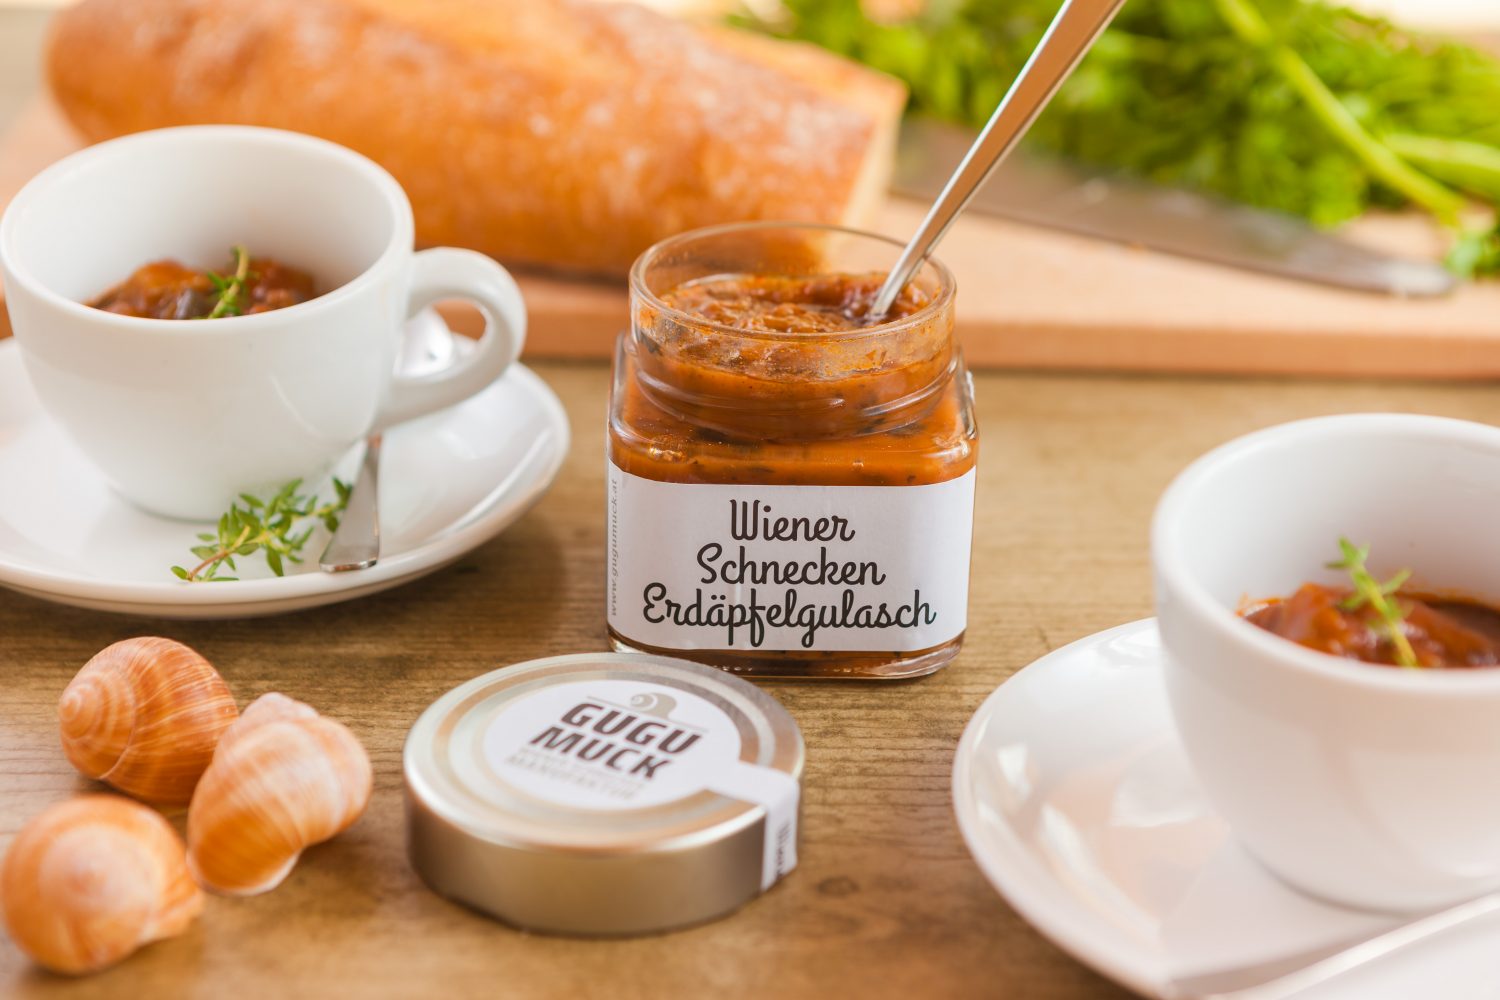 Wiener Schnecken Erdapfelgulasch von Gugumuck, Feinkostartikel und Spezialitäten testen. Schnecken kaufen im Feinkost online oder im Feinkost-Handel